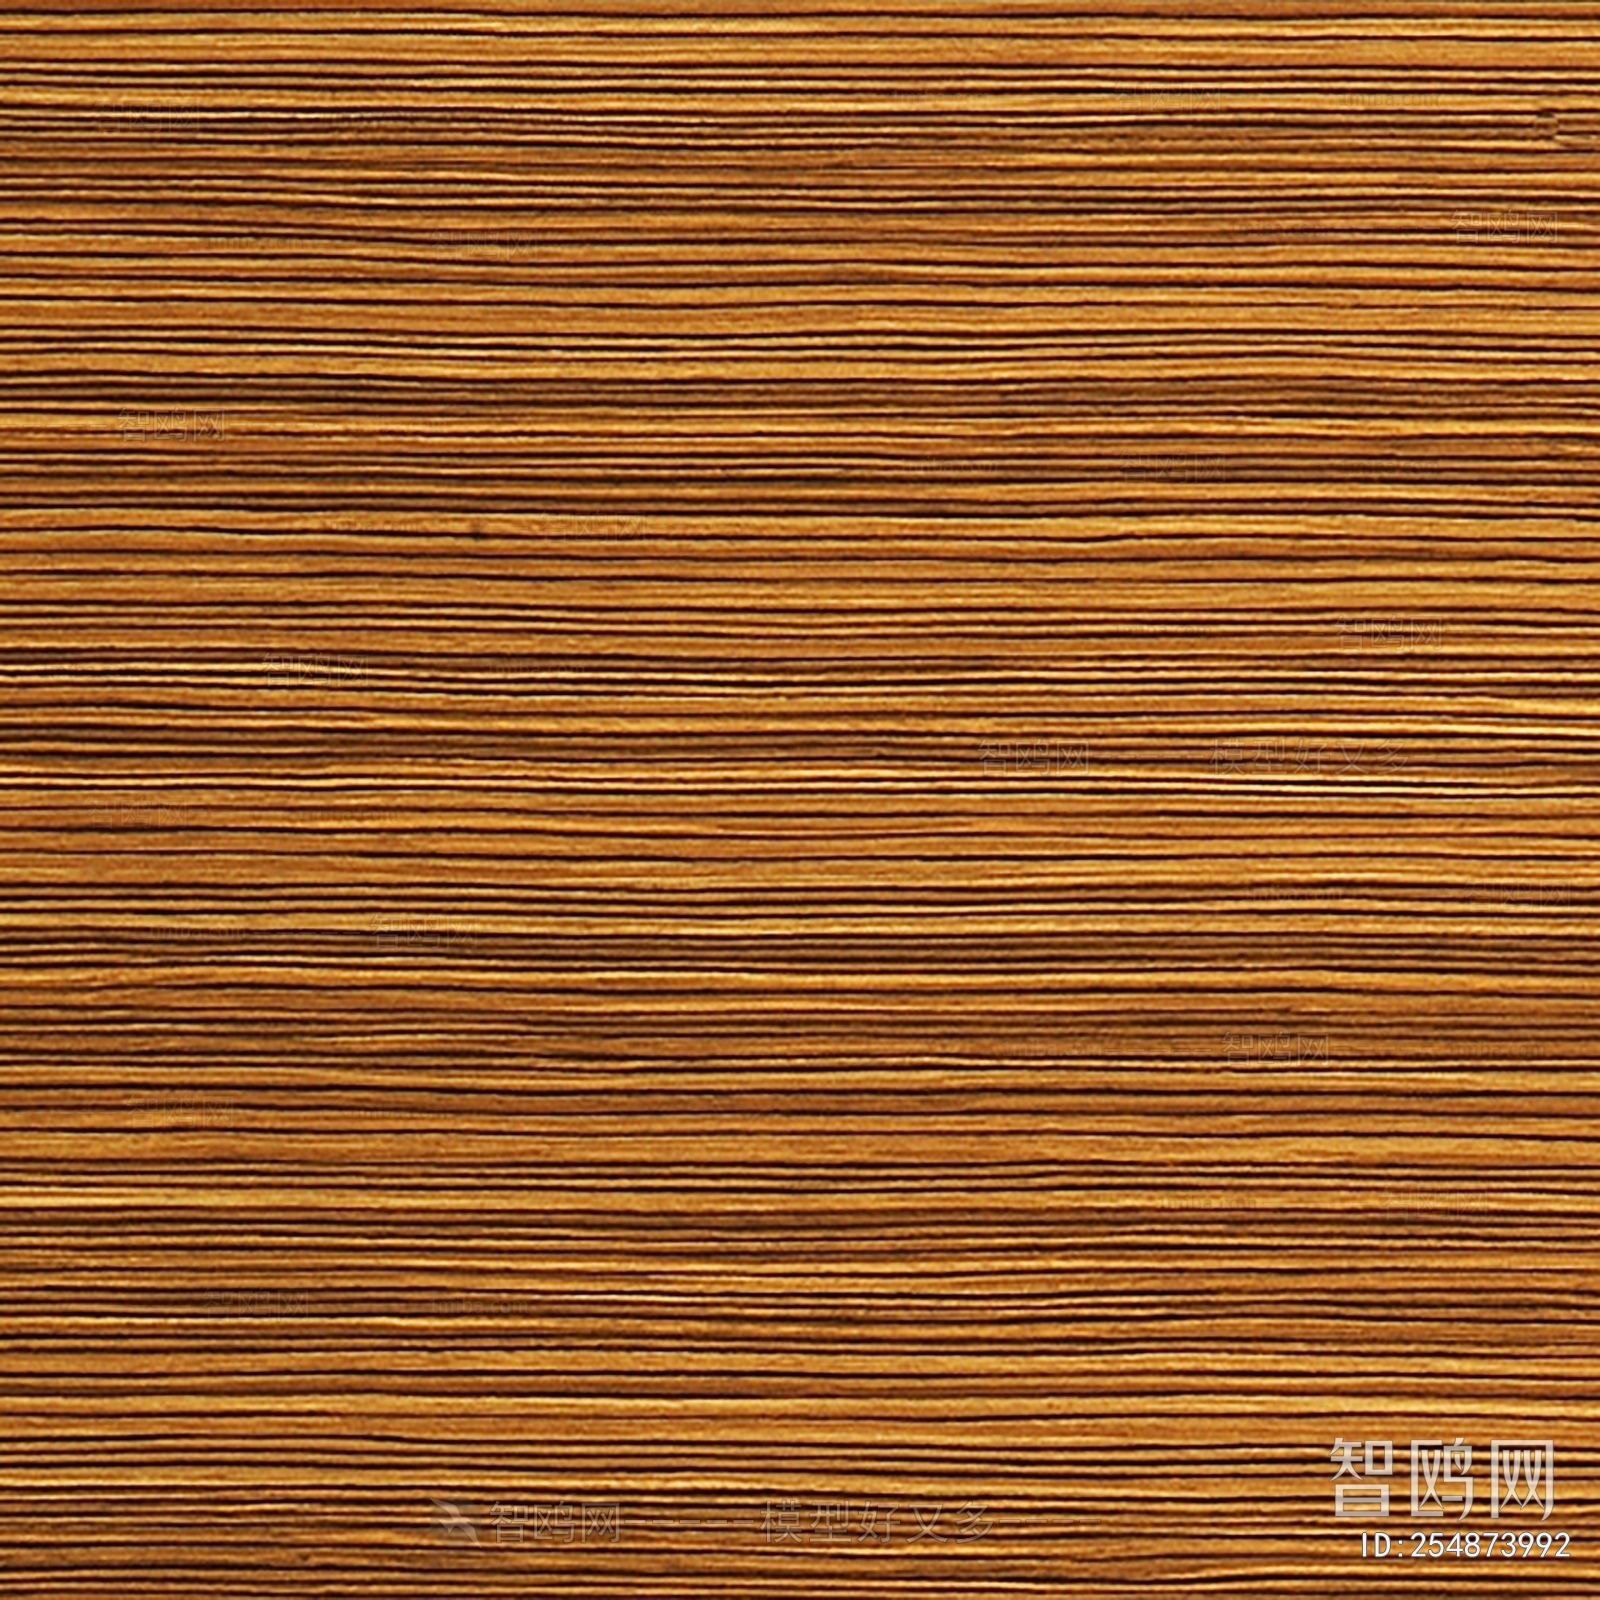 木饰面科技木板